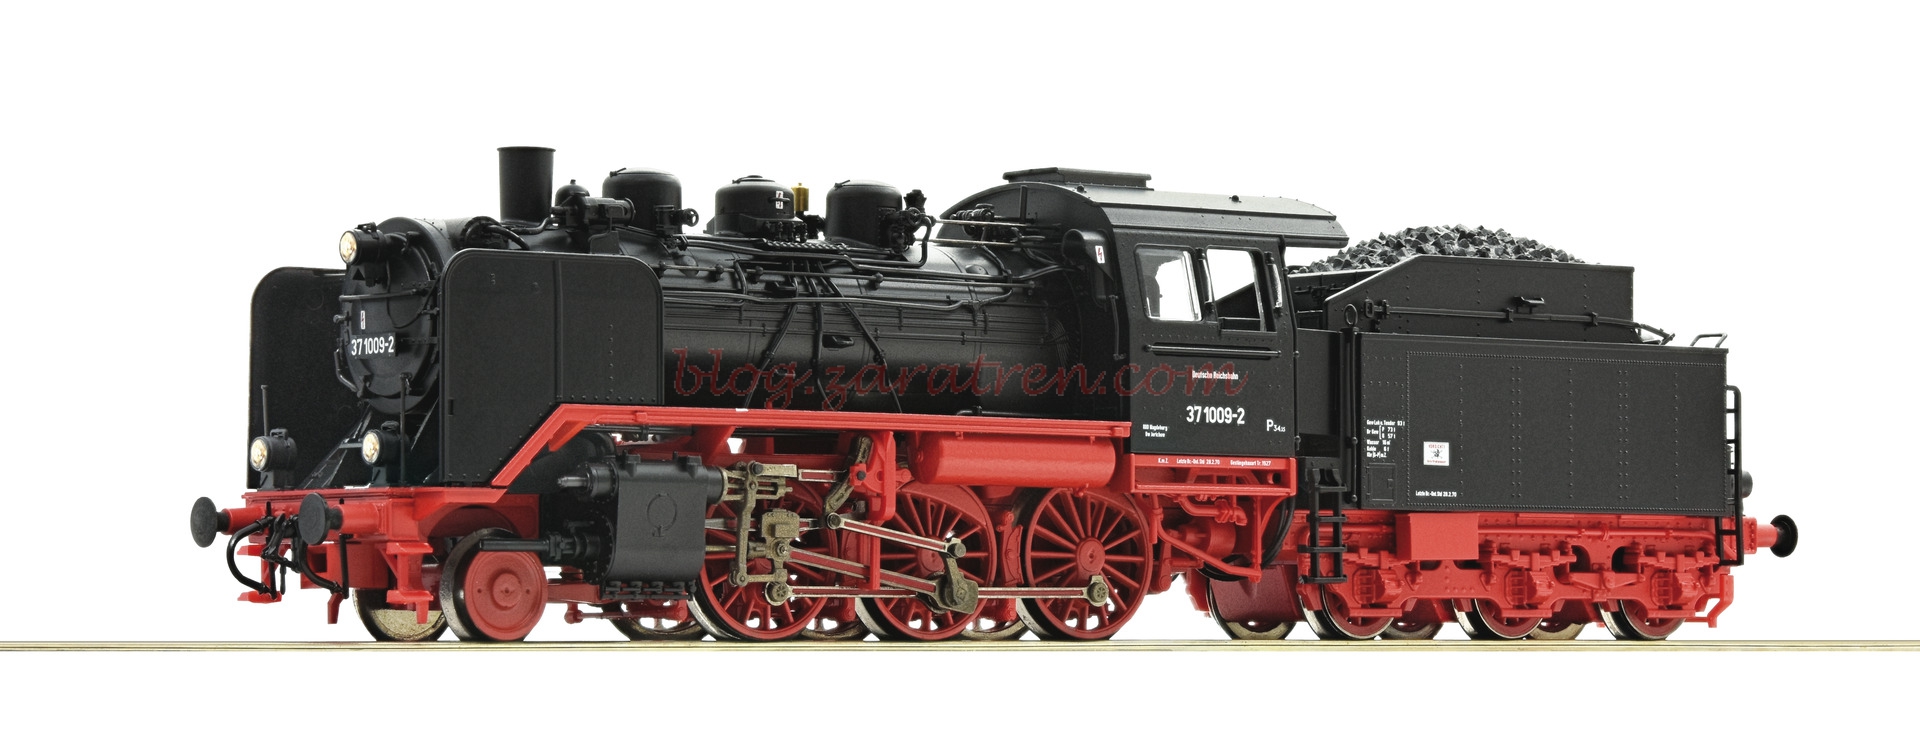 Roco – Locomotora de Vapor 37 1009-2, DR, Epoca IV, Escala H0. Ref: 71211.